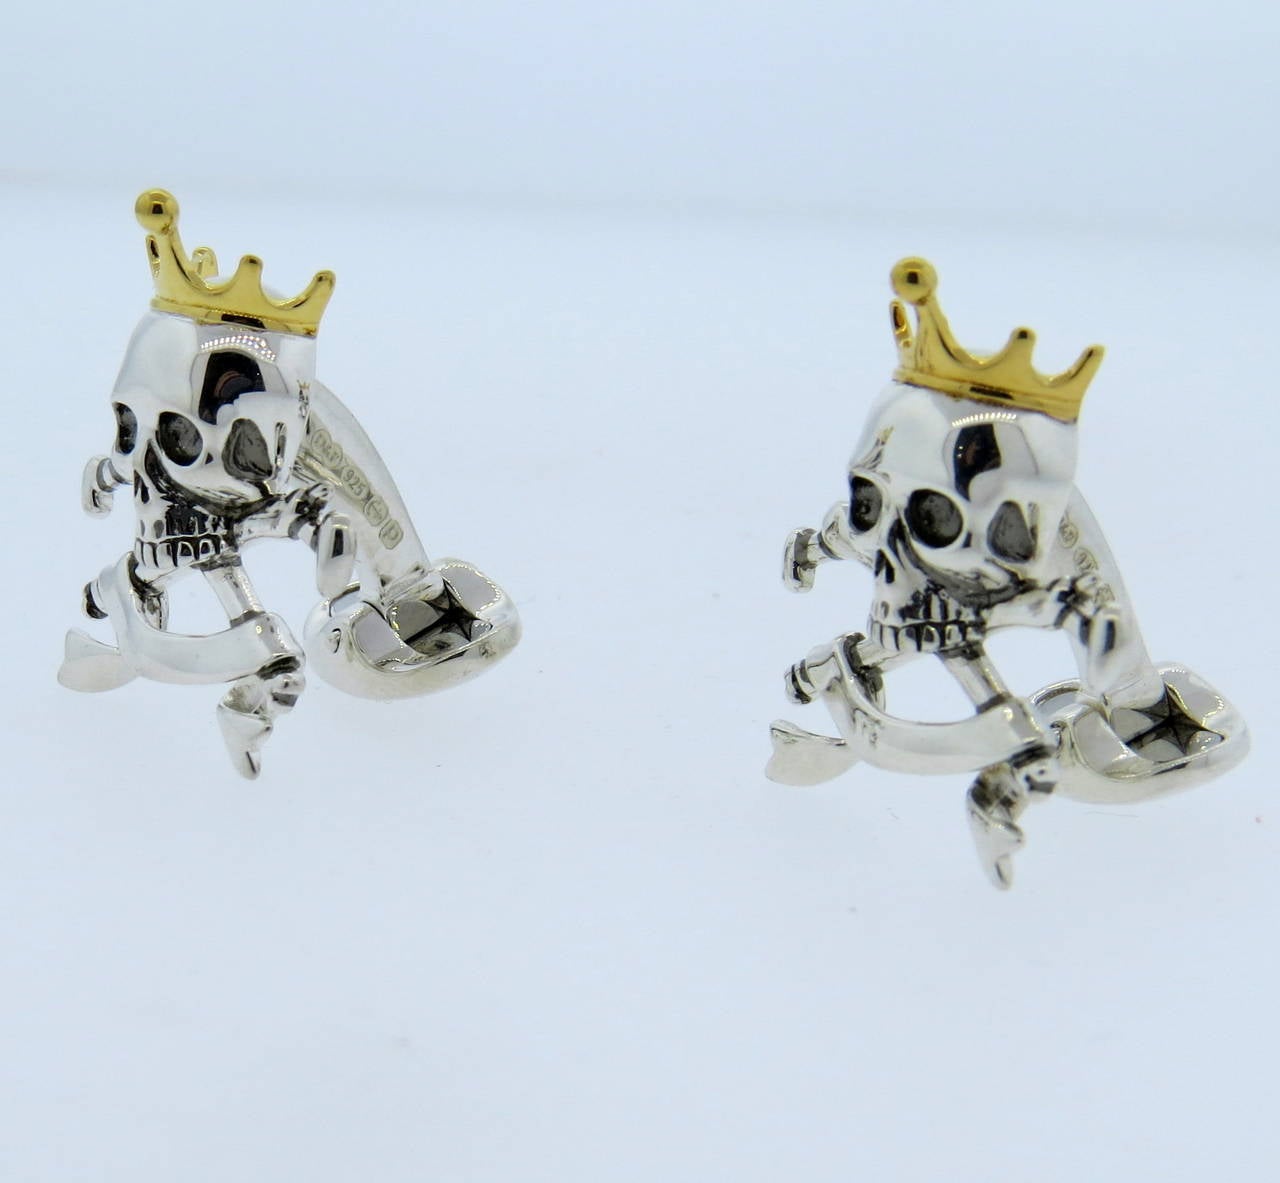 Ein Paar Manschettenknöpfe aus Sterlingsilber mit goldener Emaille, die Totenköpfe mit Kronen auf gekreuzten Knochen darstellen.  Die von Deakin & Francis gefertigten Manschettenknöpfe messen 28 mm x 22 mm und wiegen 19 Gramm.